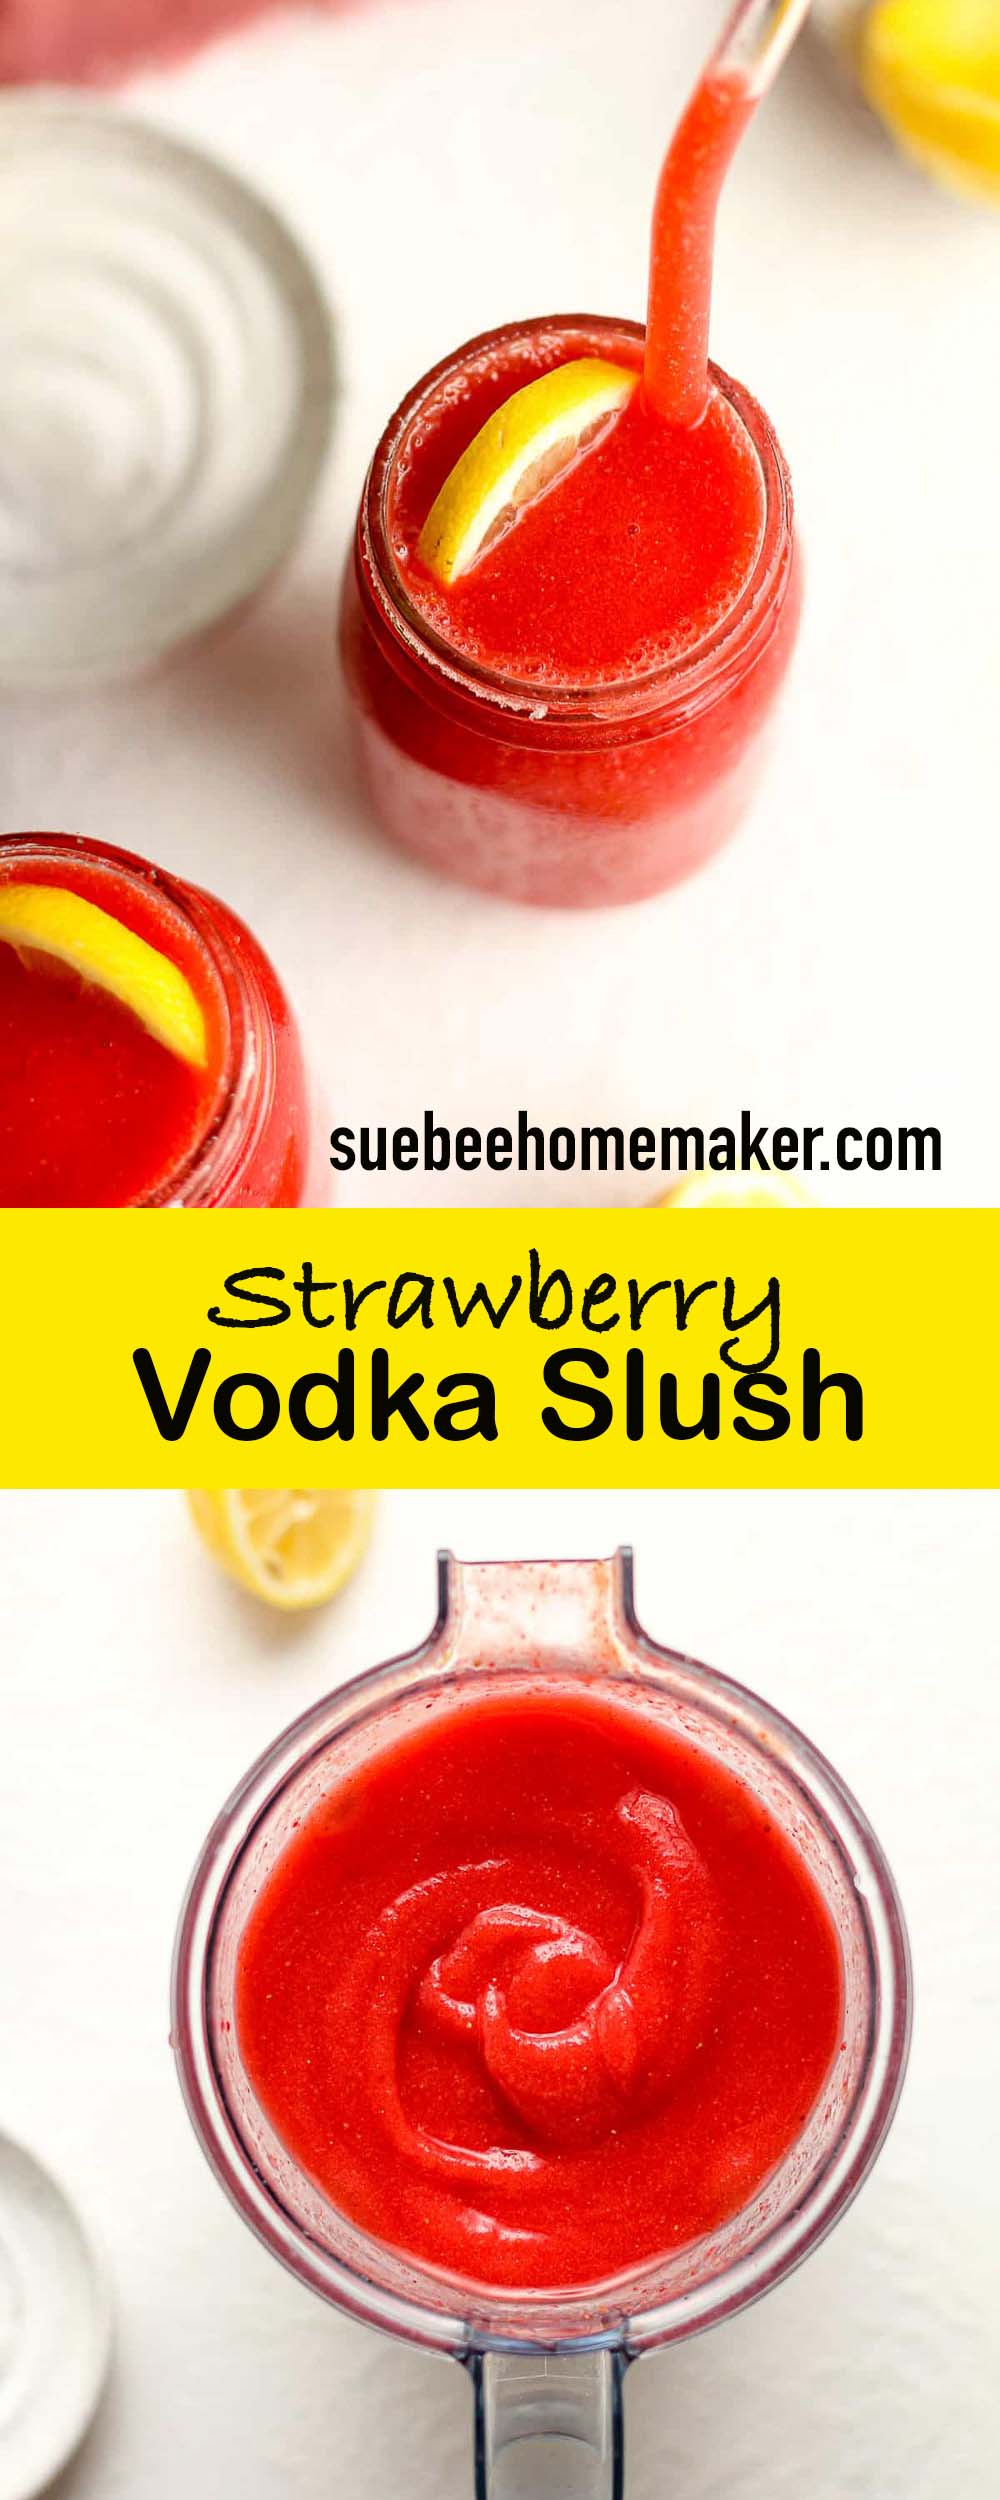 Two photos for strawberry vodka slush.